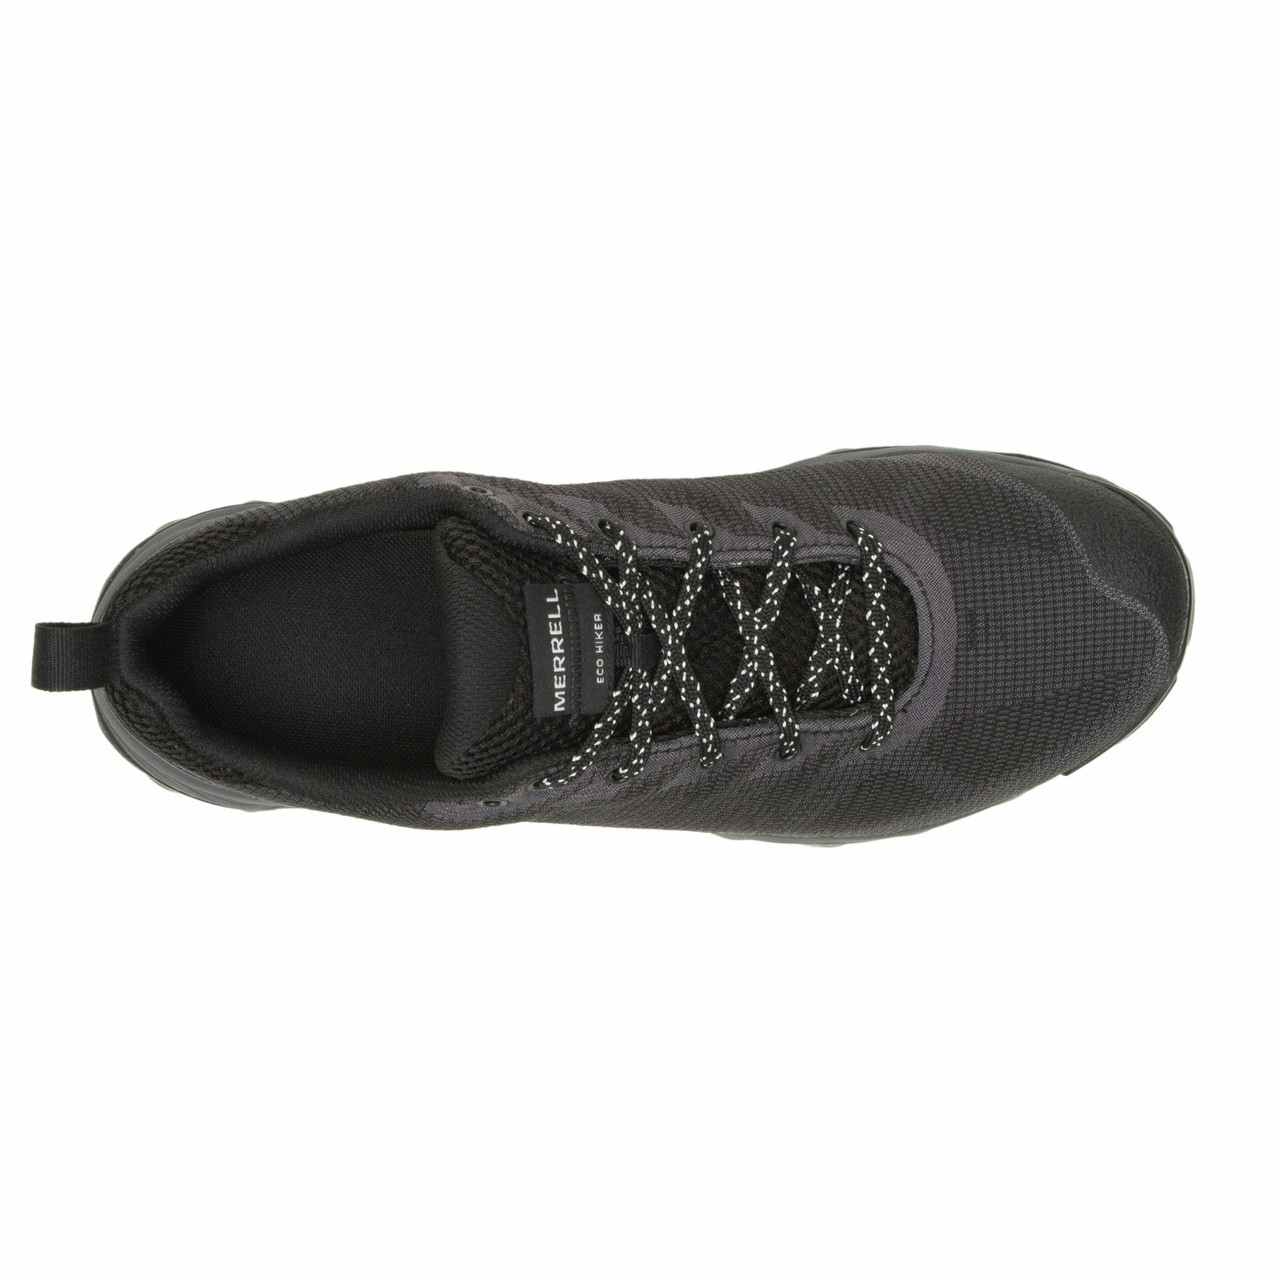 Chaussures de courte rando. imperméables Speed Eco Noir/Asphalte